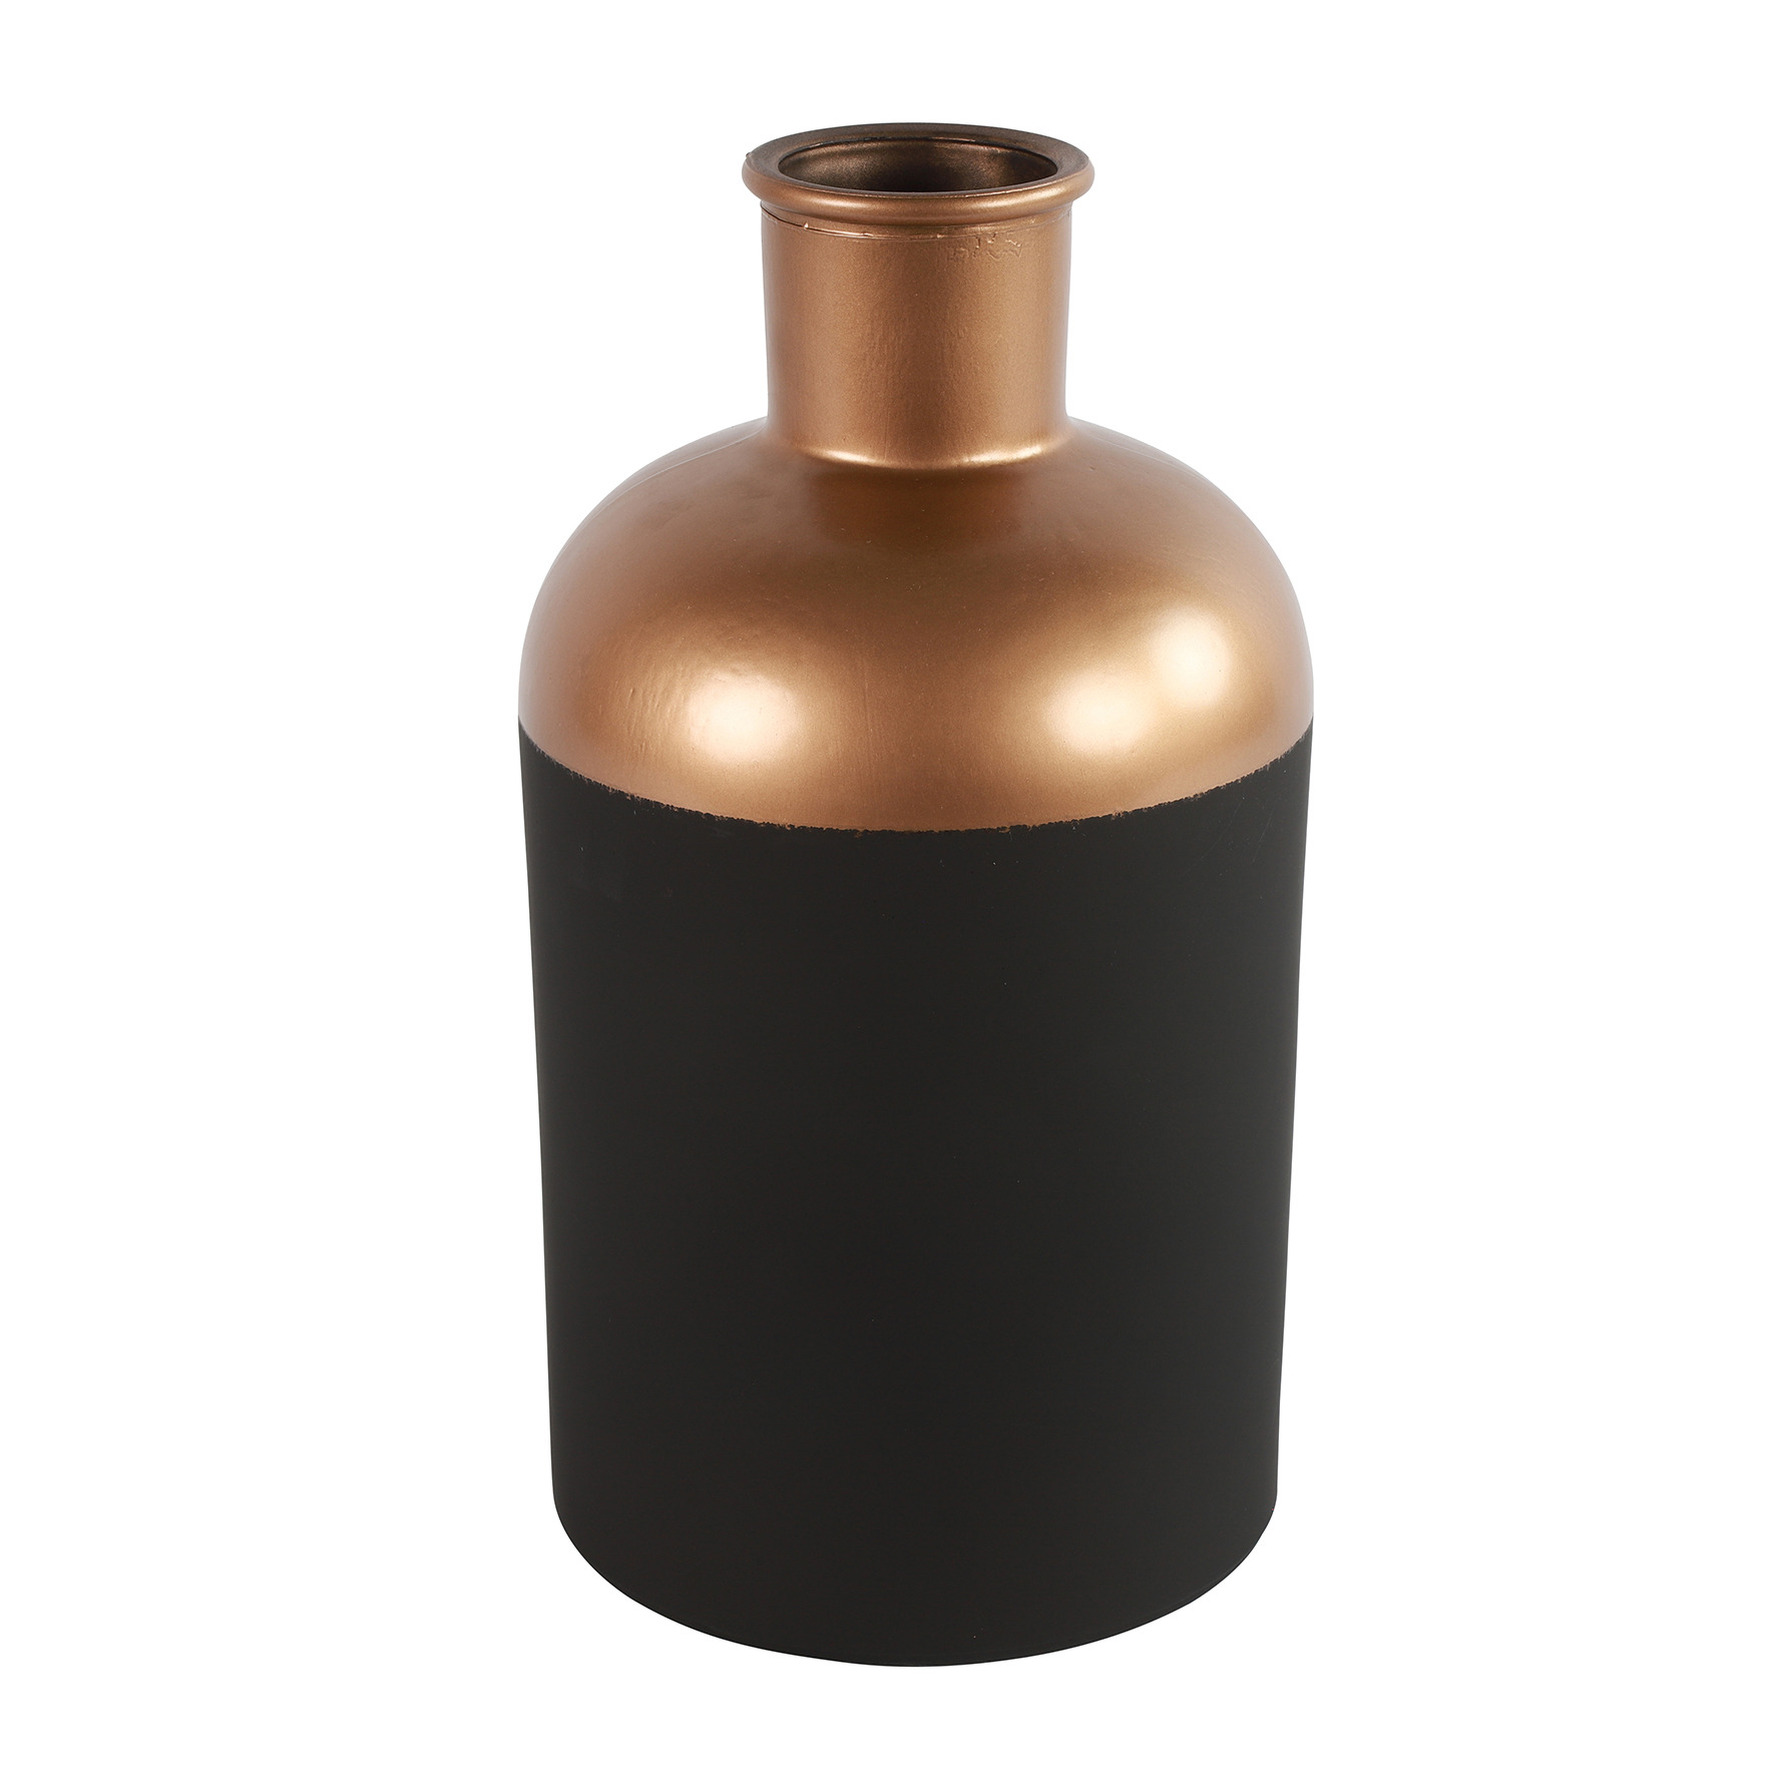 Countryfield Bloemen-deco vaas zwart-koper glas fles D17 x H31 cm